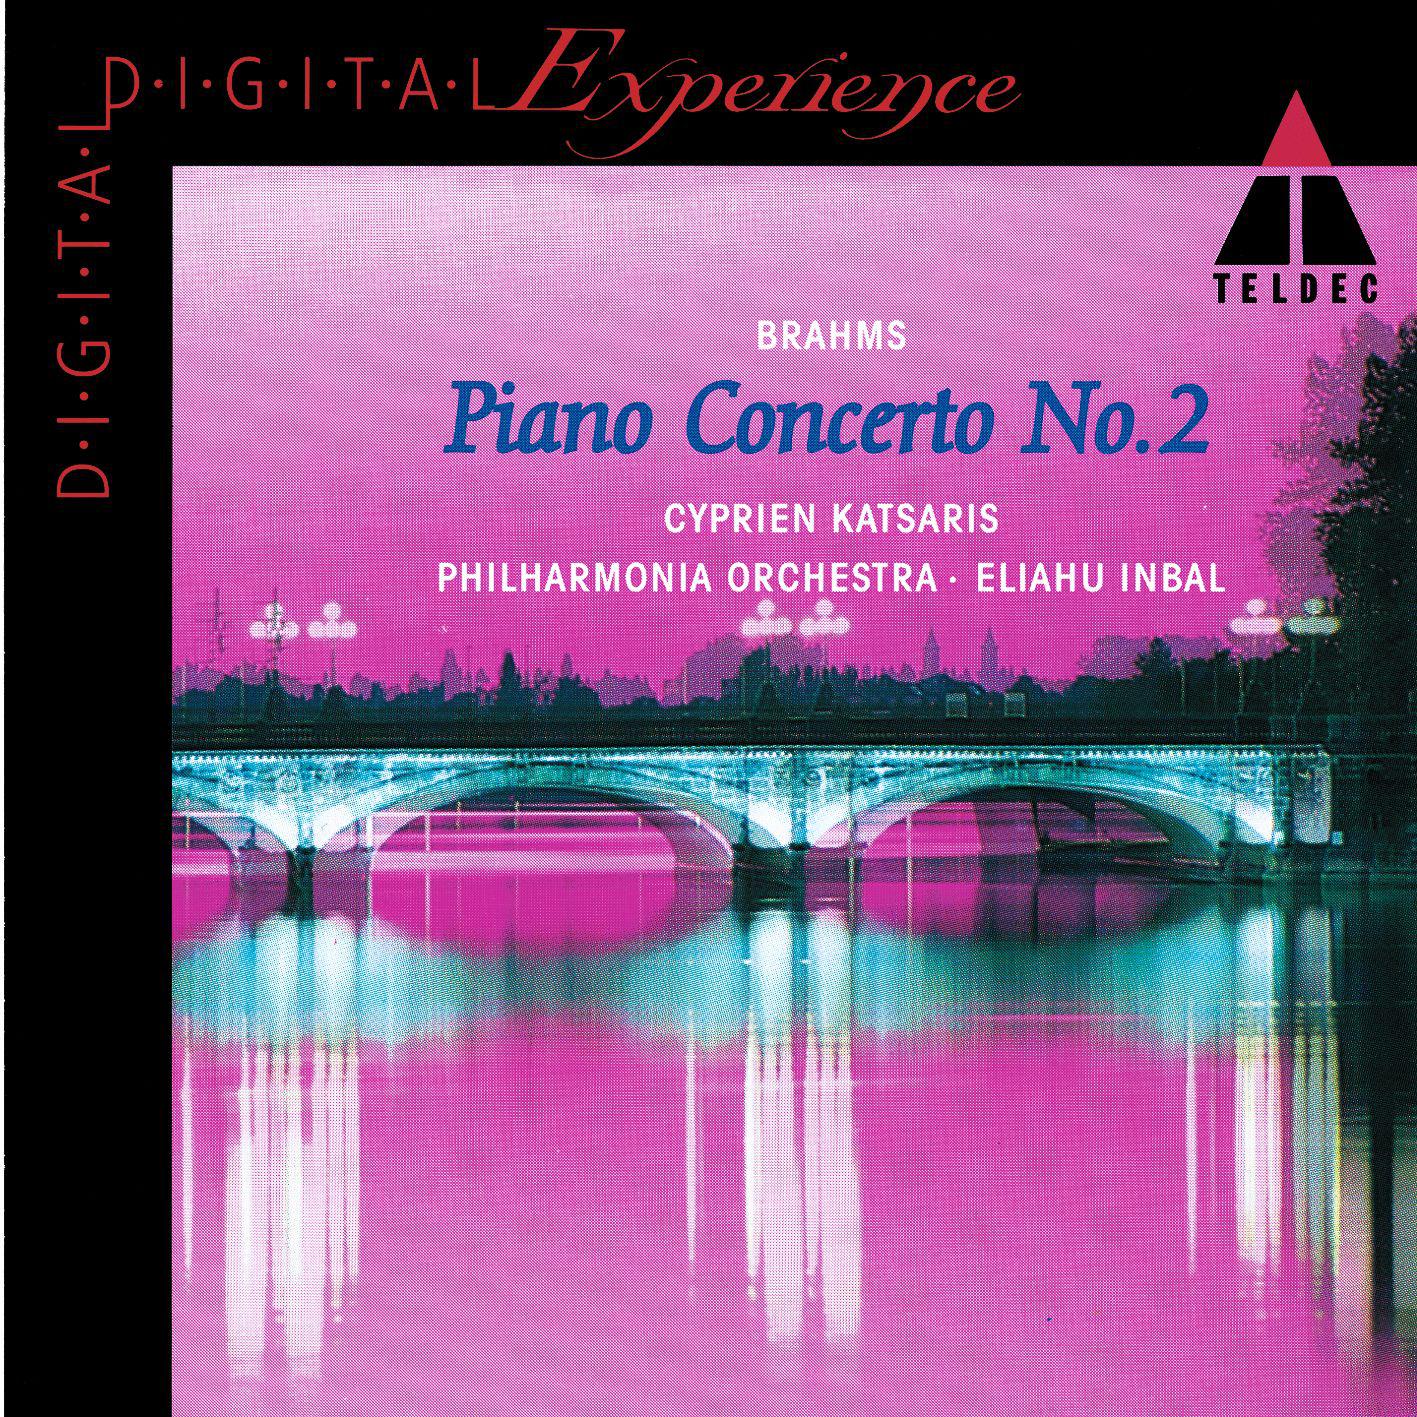 Piano Concerto No. 2 in B-Flat Major, Op. 83:I. Allegro non troppo